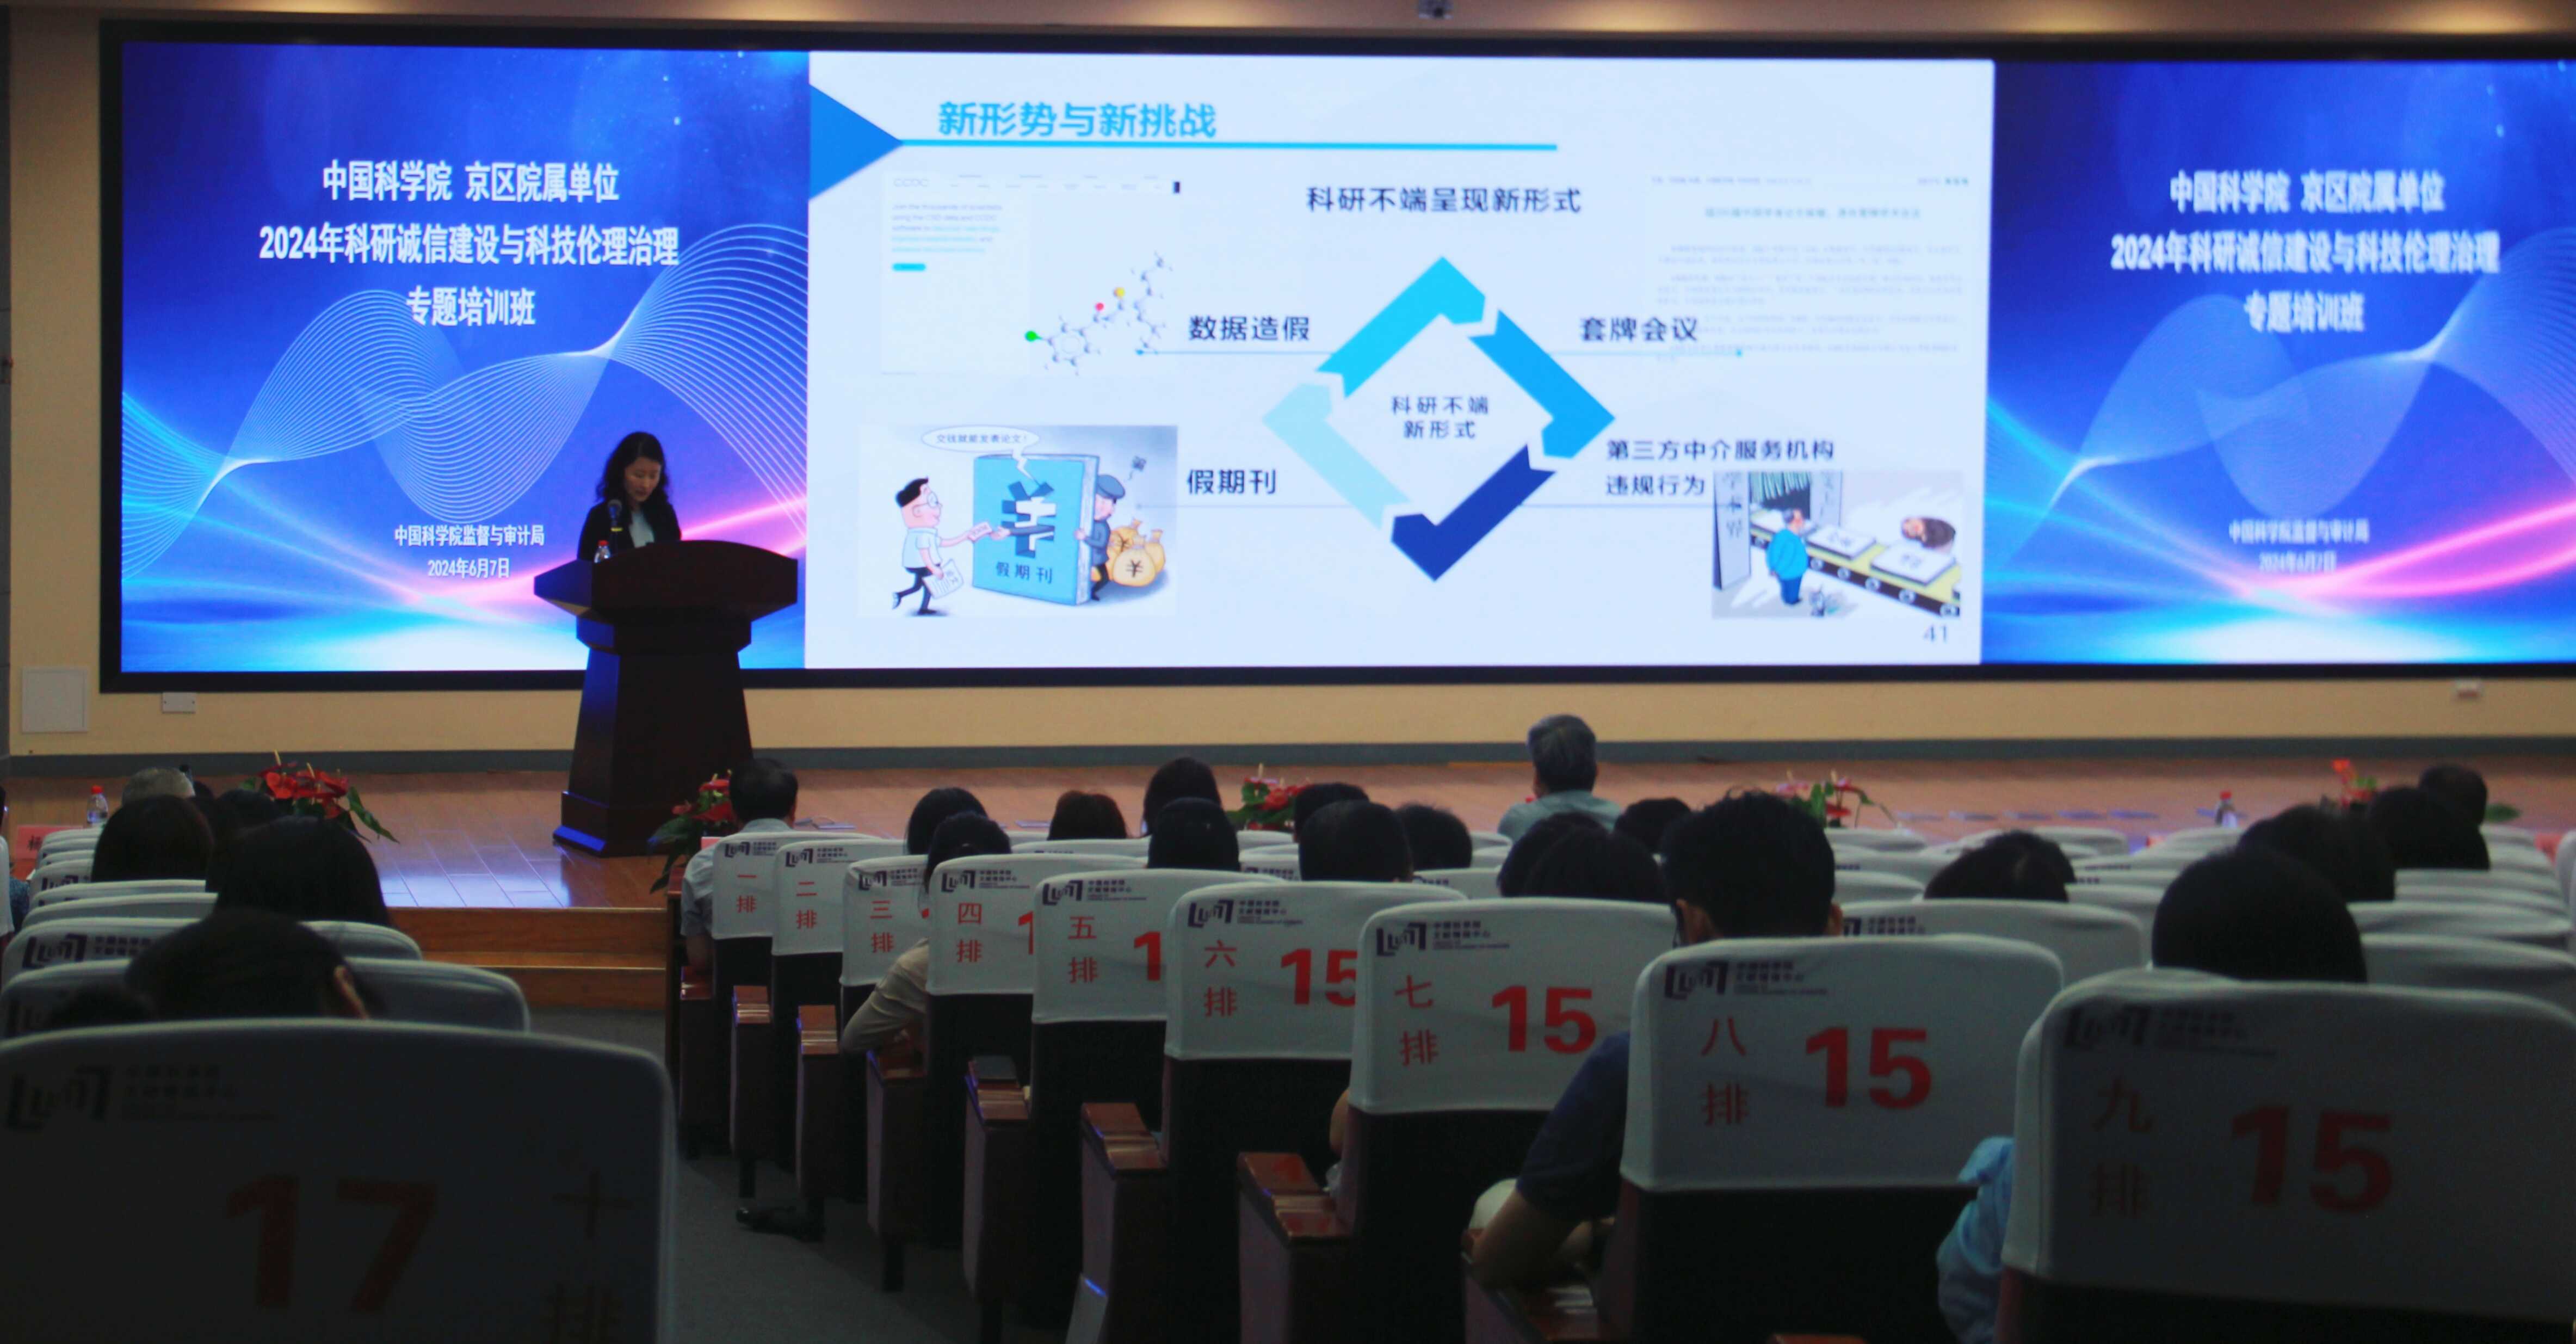 2024年中国科学院京区单位科研诚信建设与科技伦理治理专题培训班在京举办